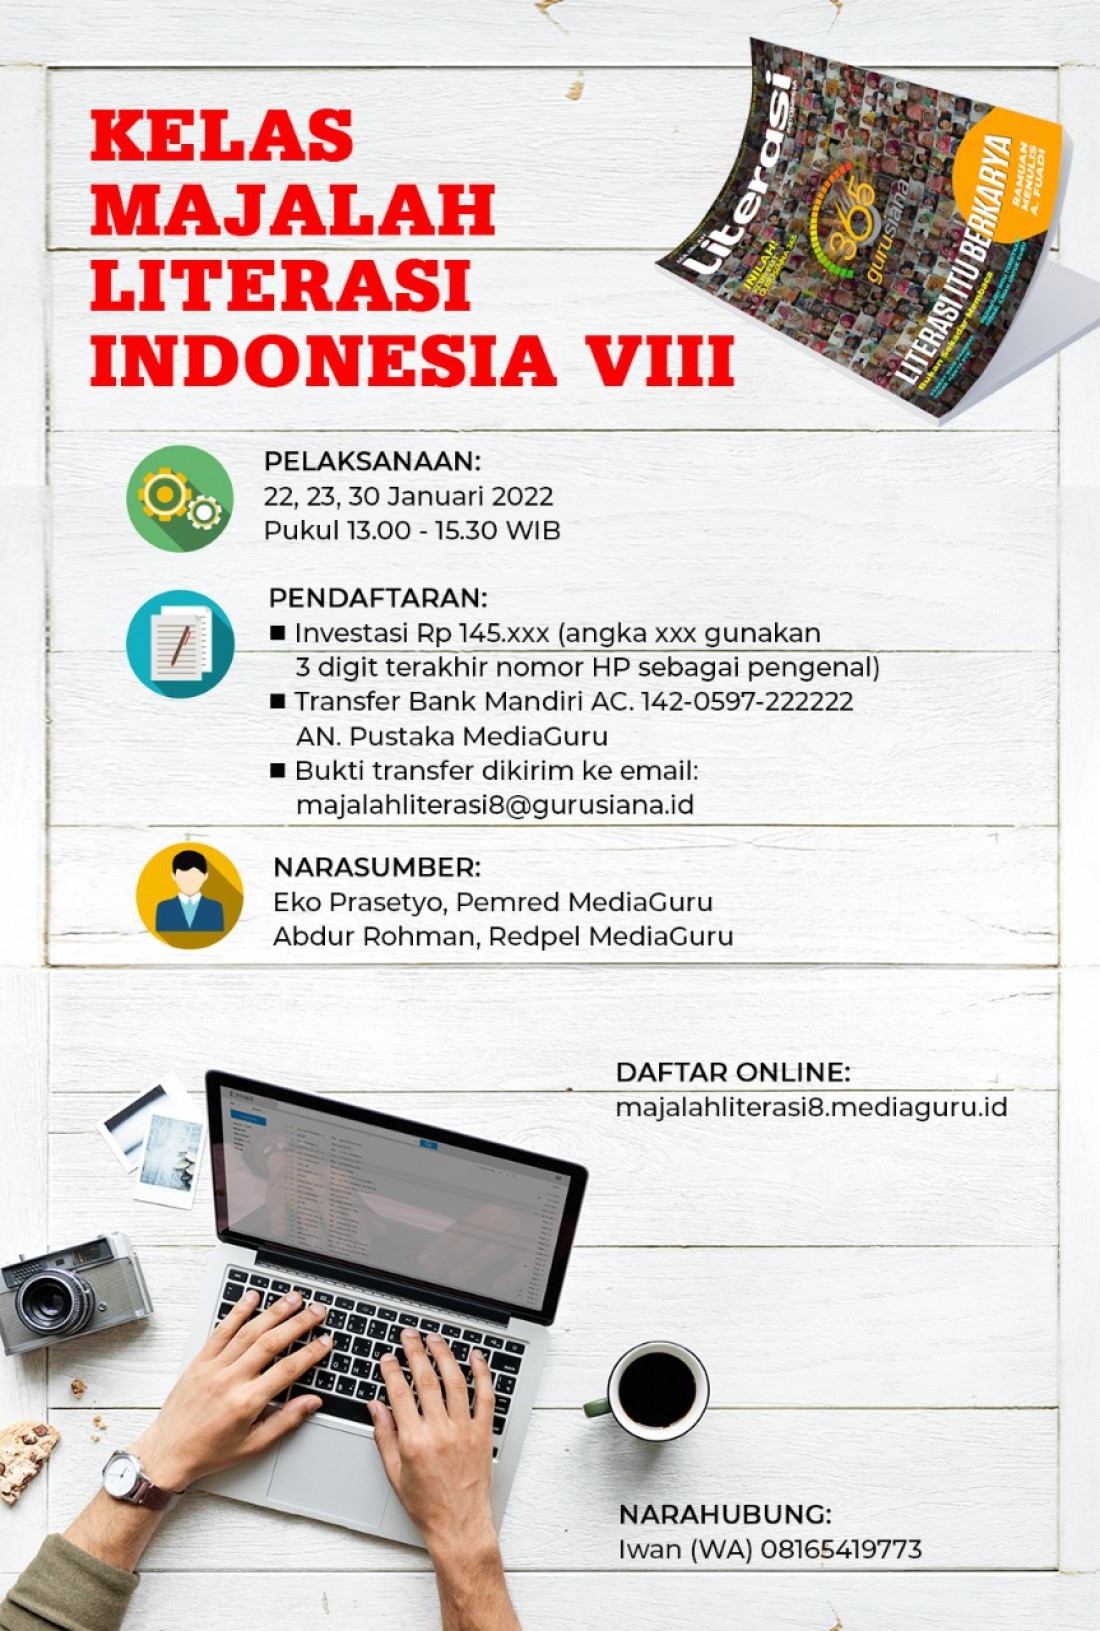 KELAS MENULIS MAJALAH LITERASI INDONESIA VIII (22 - 30 JANUARI 2022)